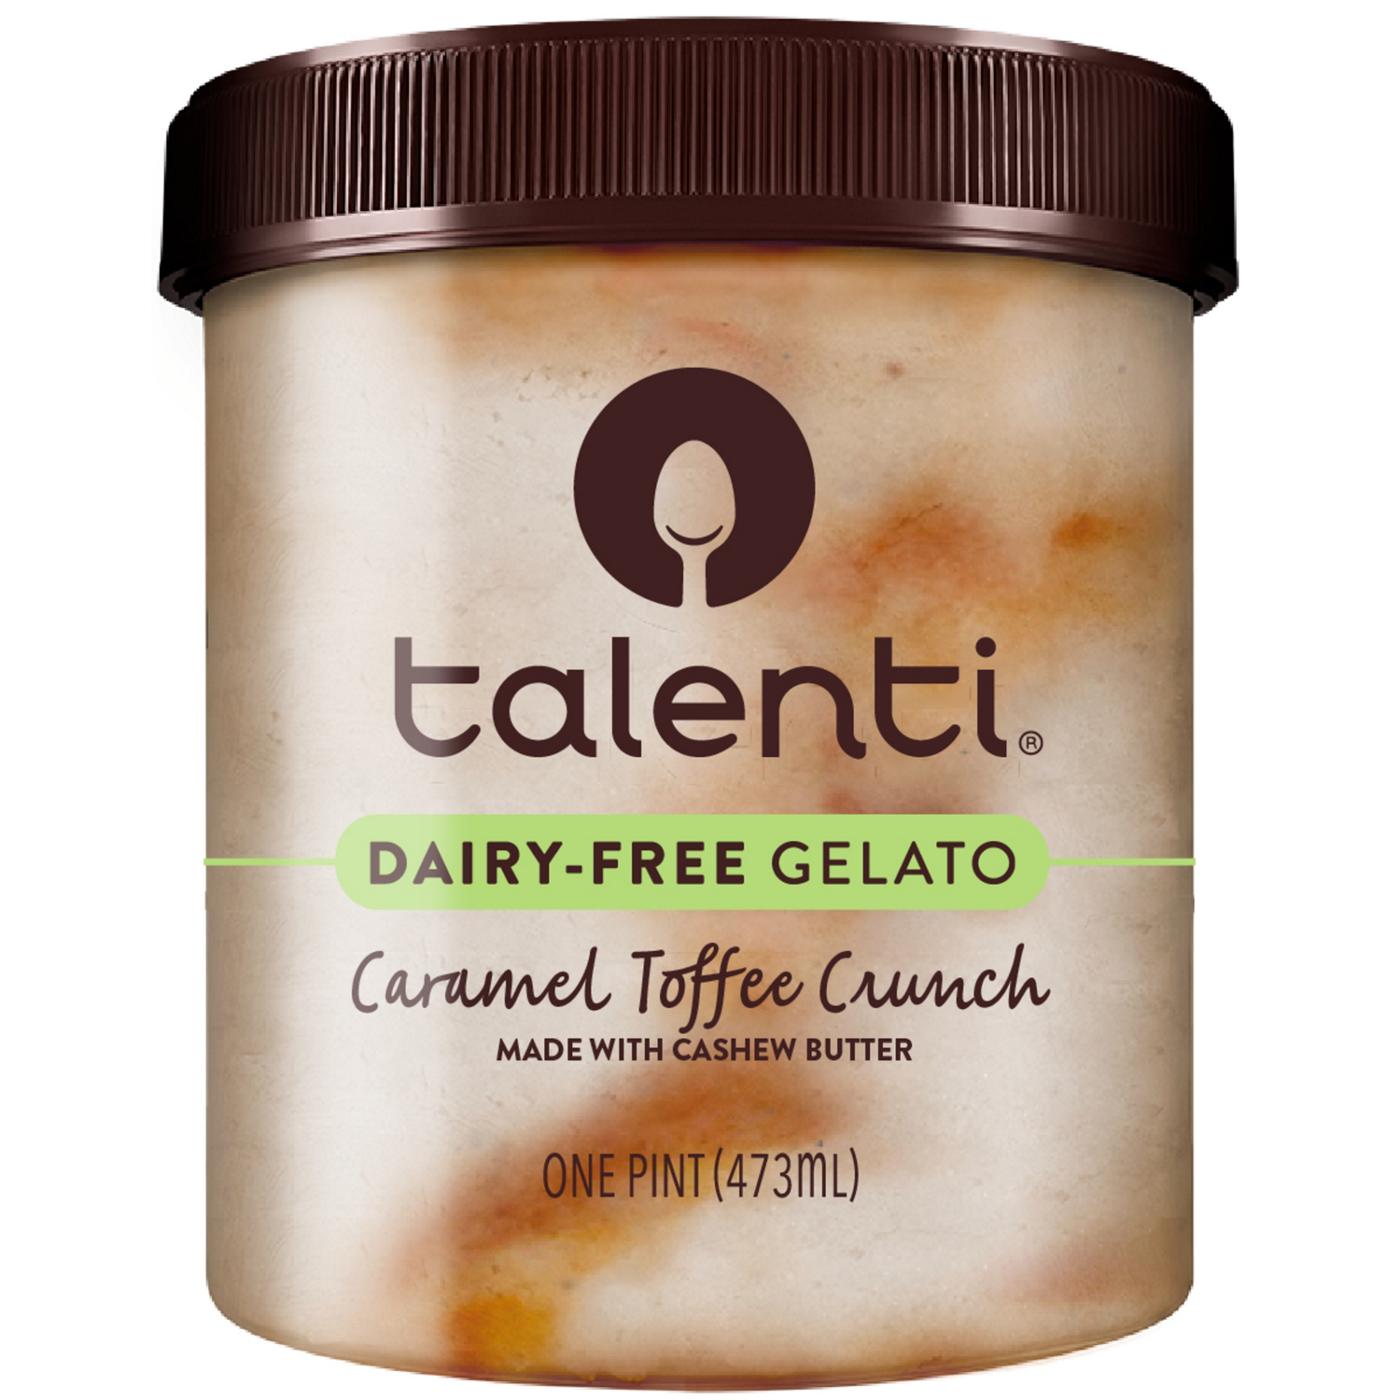 Talenti Dairy-Free Gelato Reviews & Info